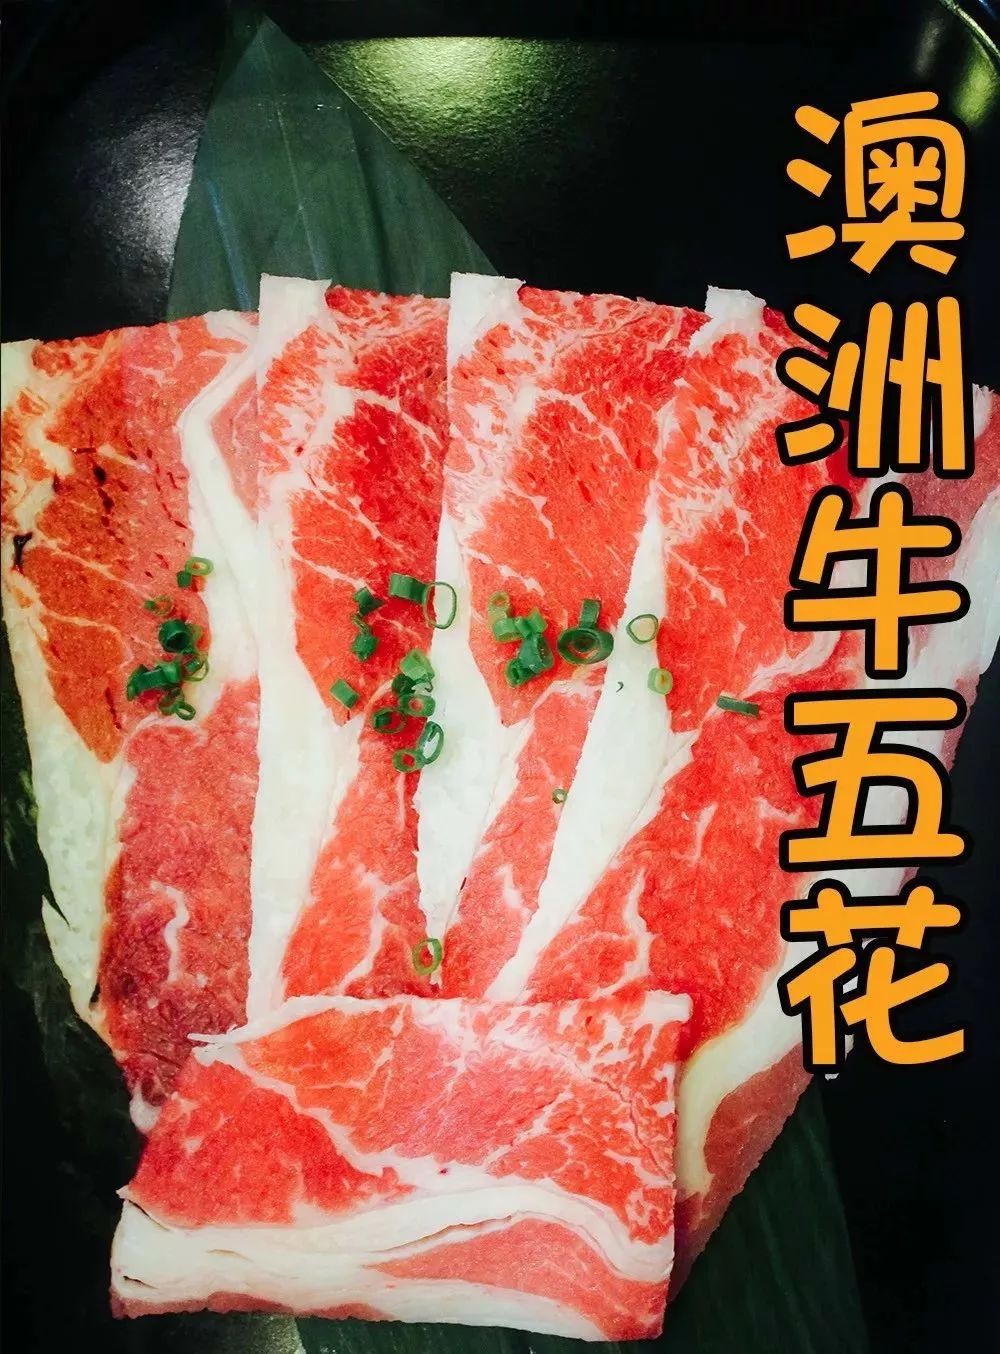 超人气的日式烧肉自助188元2人抢购久寻花季超值日式